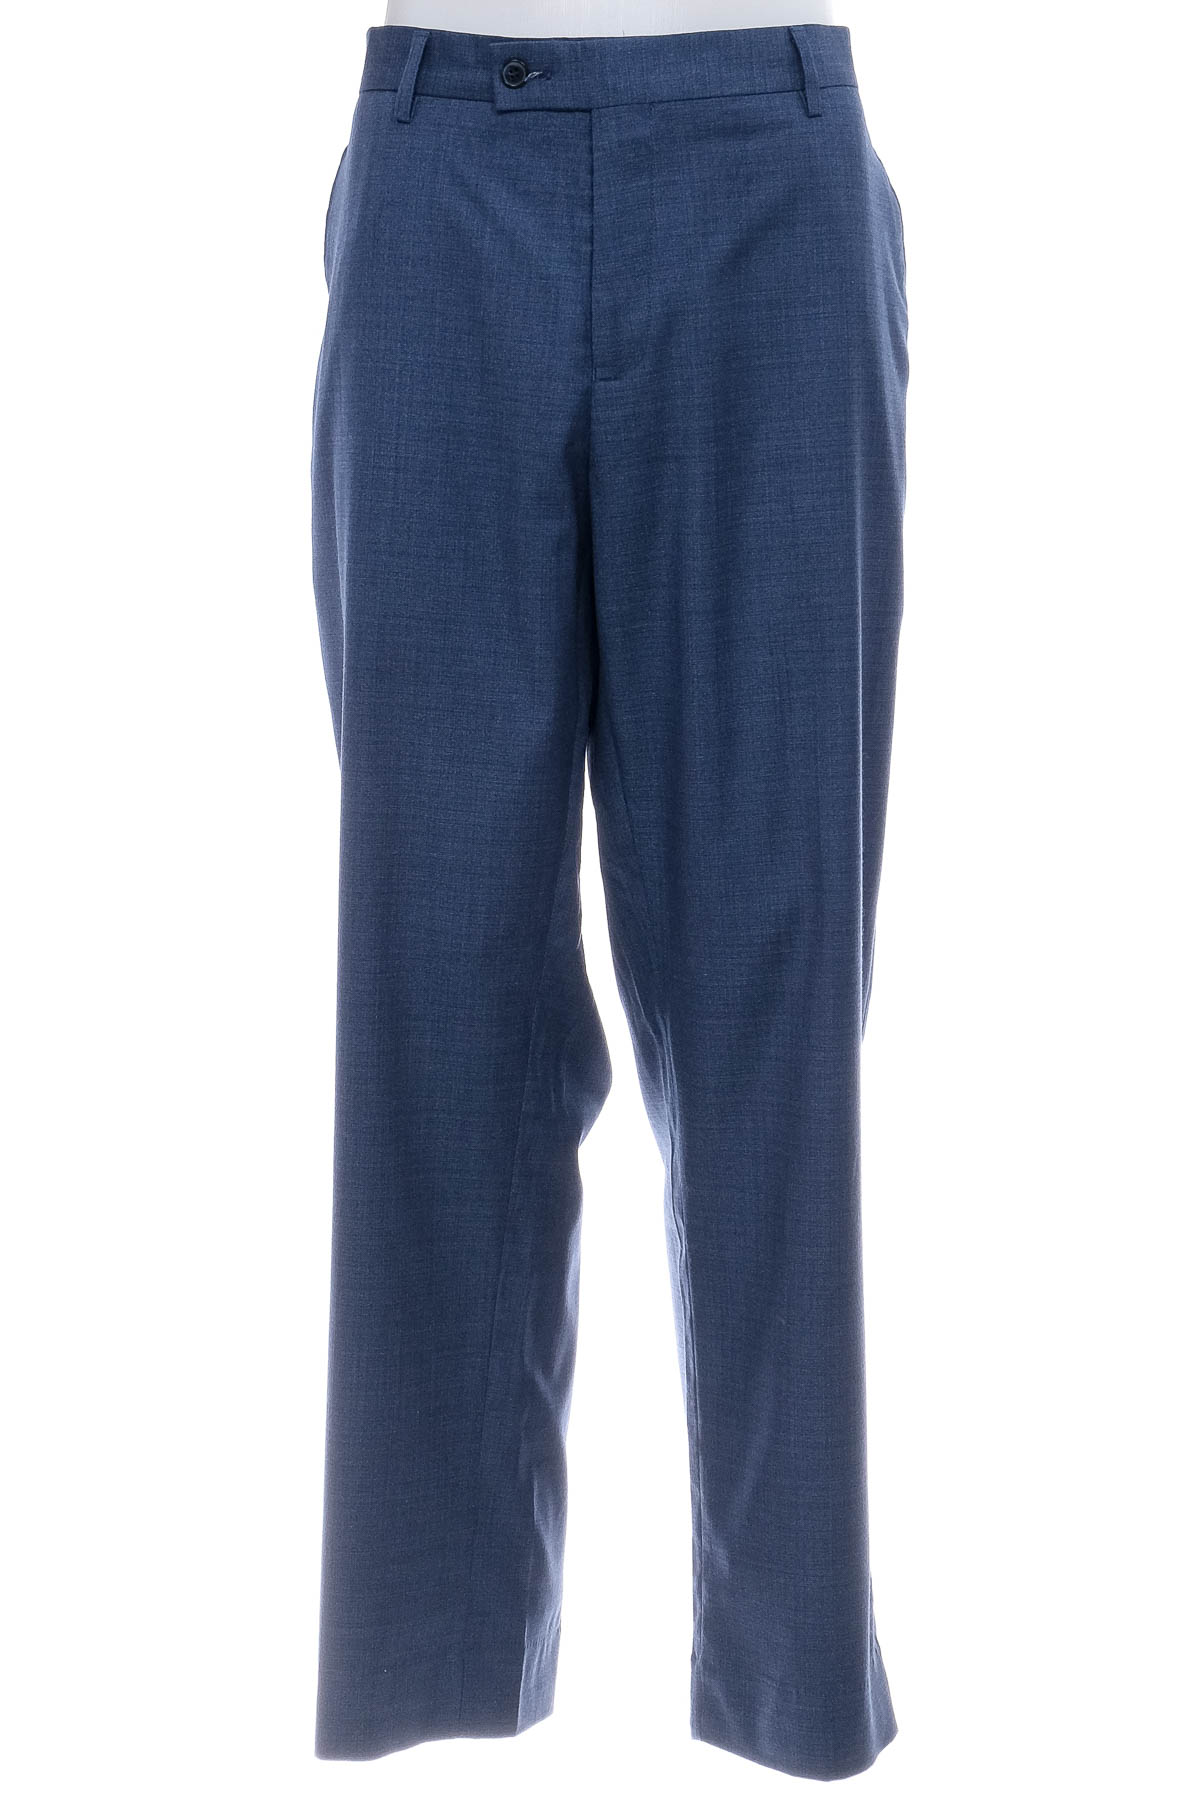 Pantalon pentru bărbați - CONNOR - 0